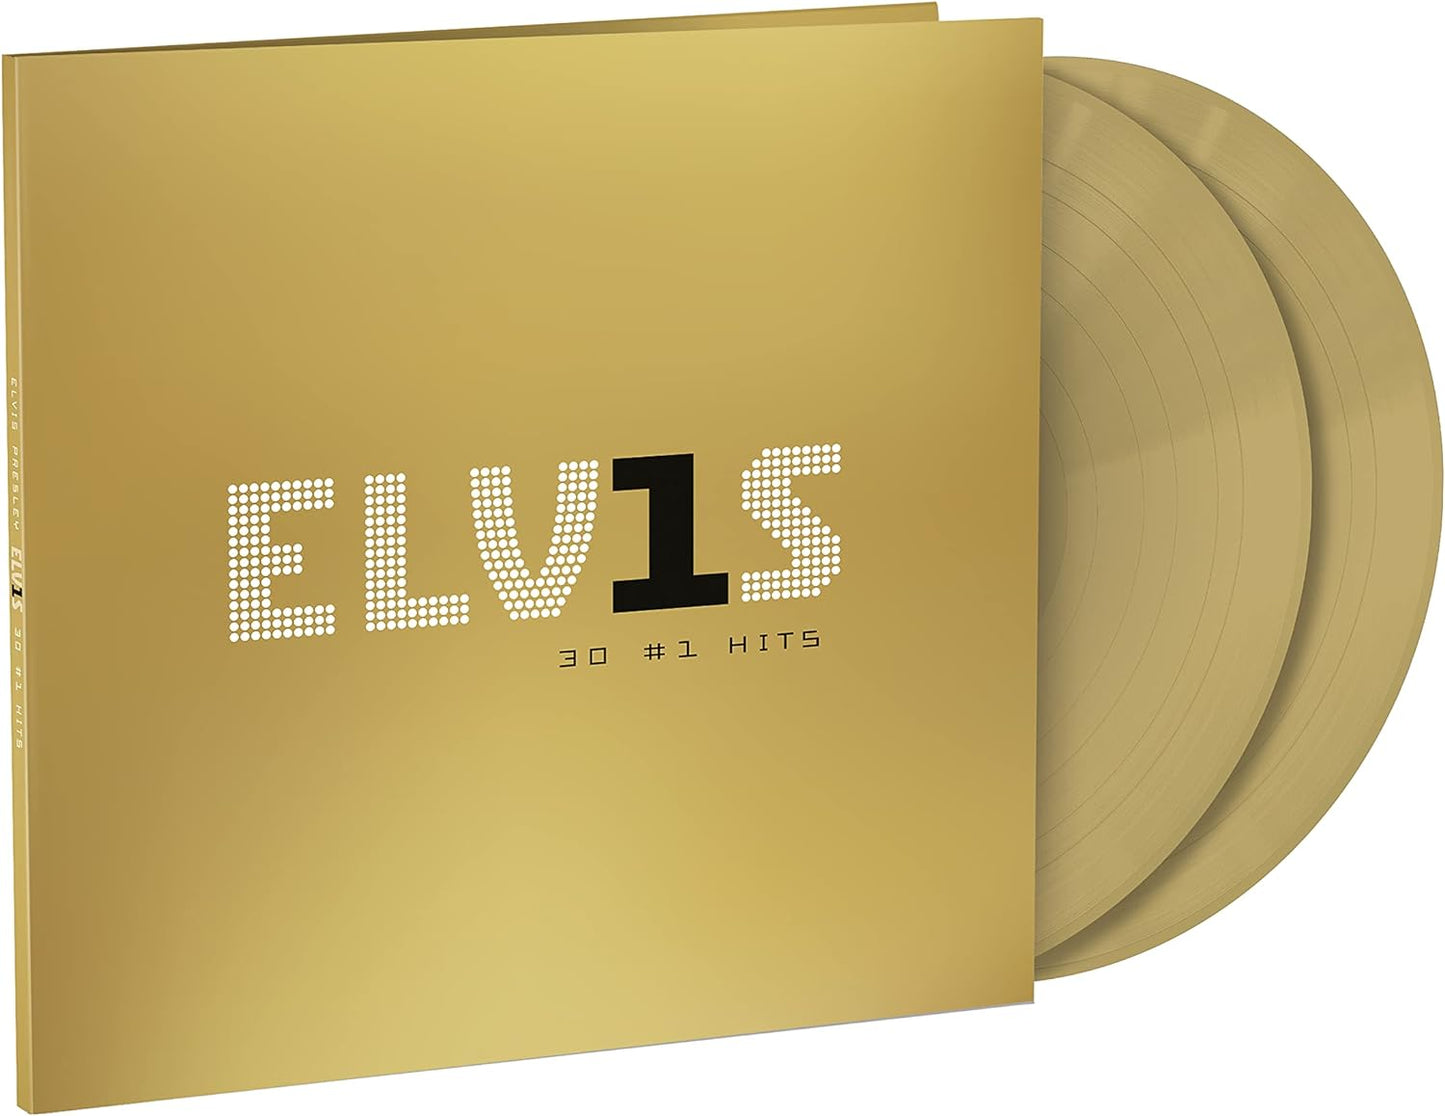 Elvis Presley – ELV1S 30 #1 Hits - LP Dorado